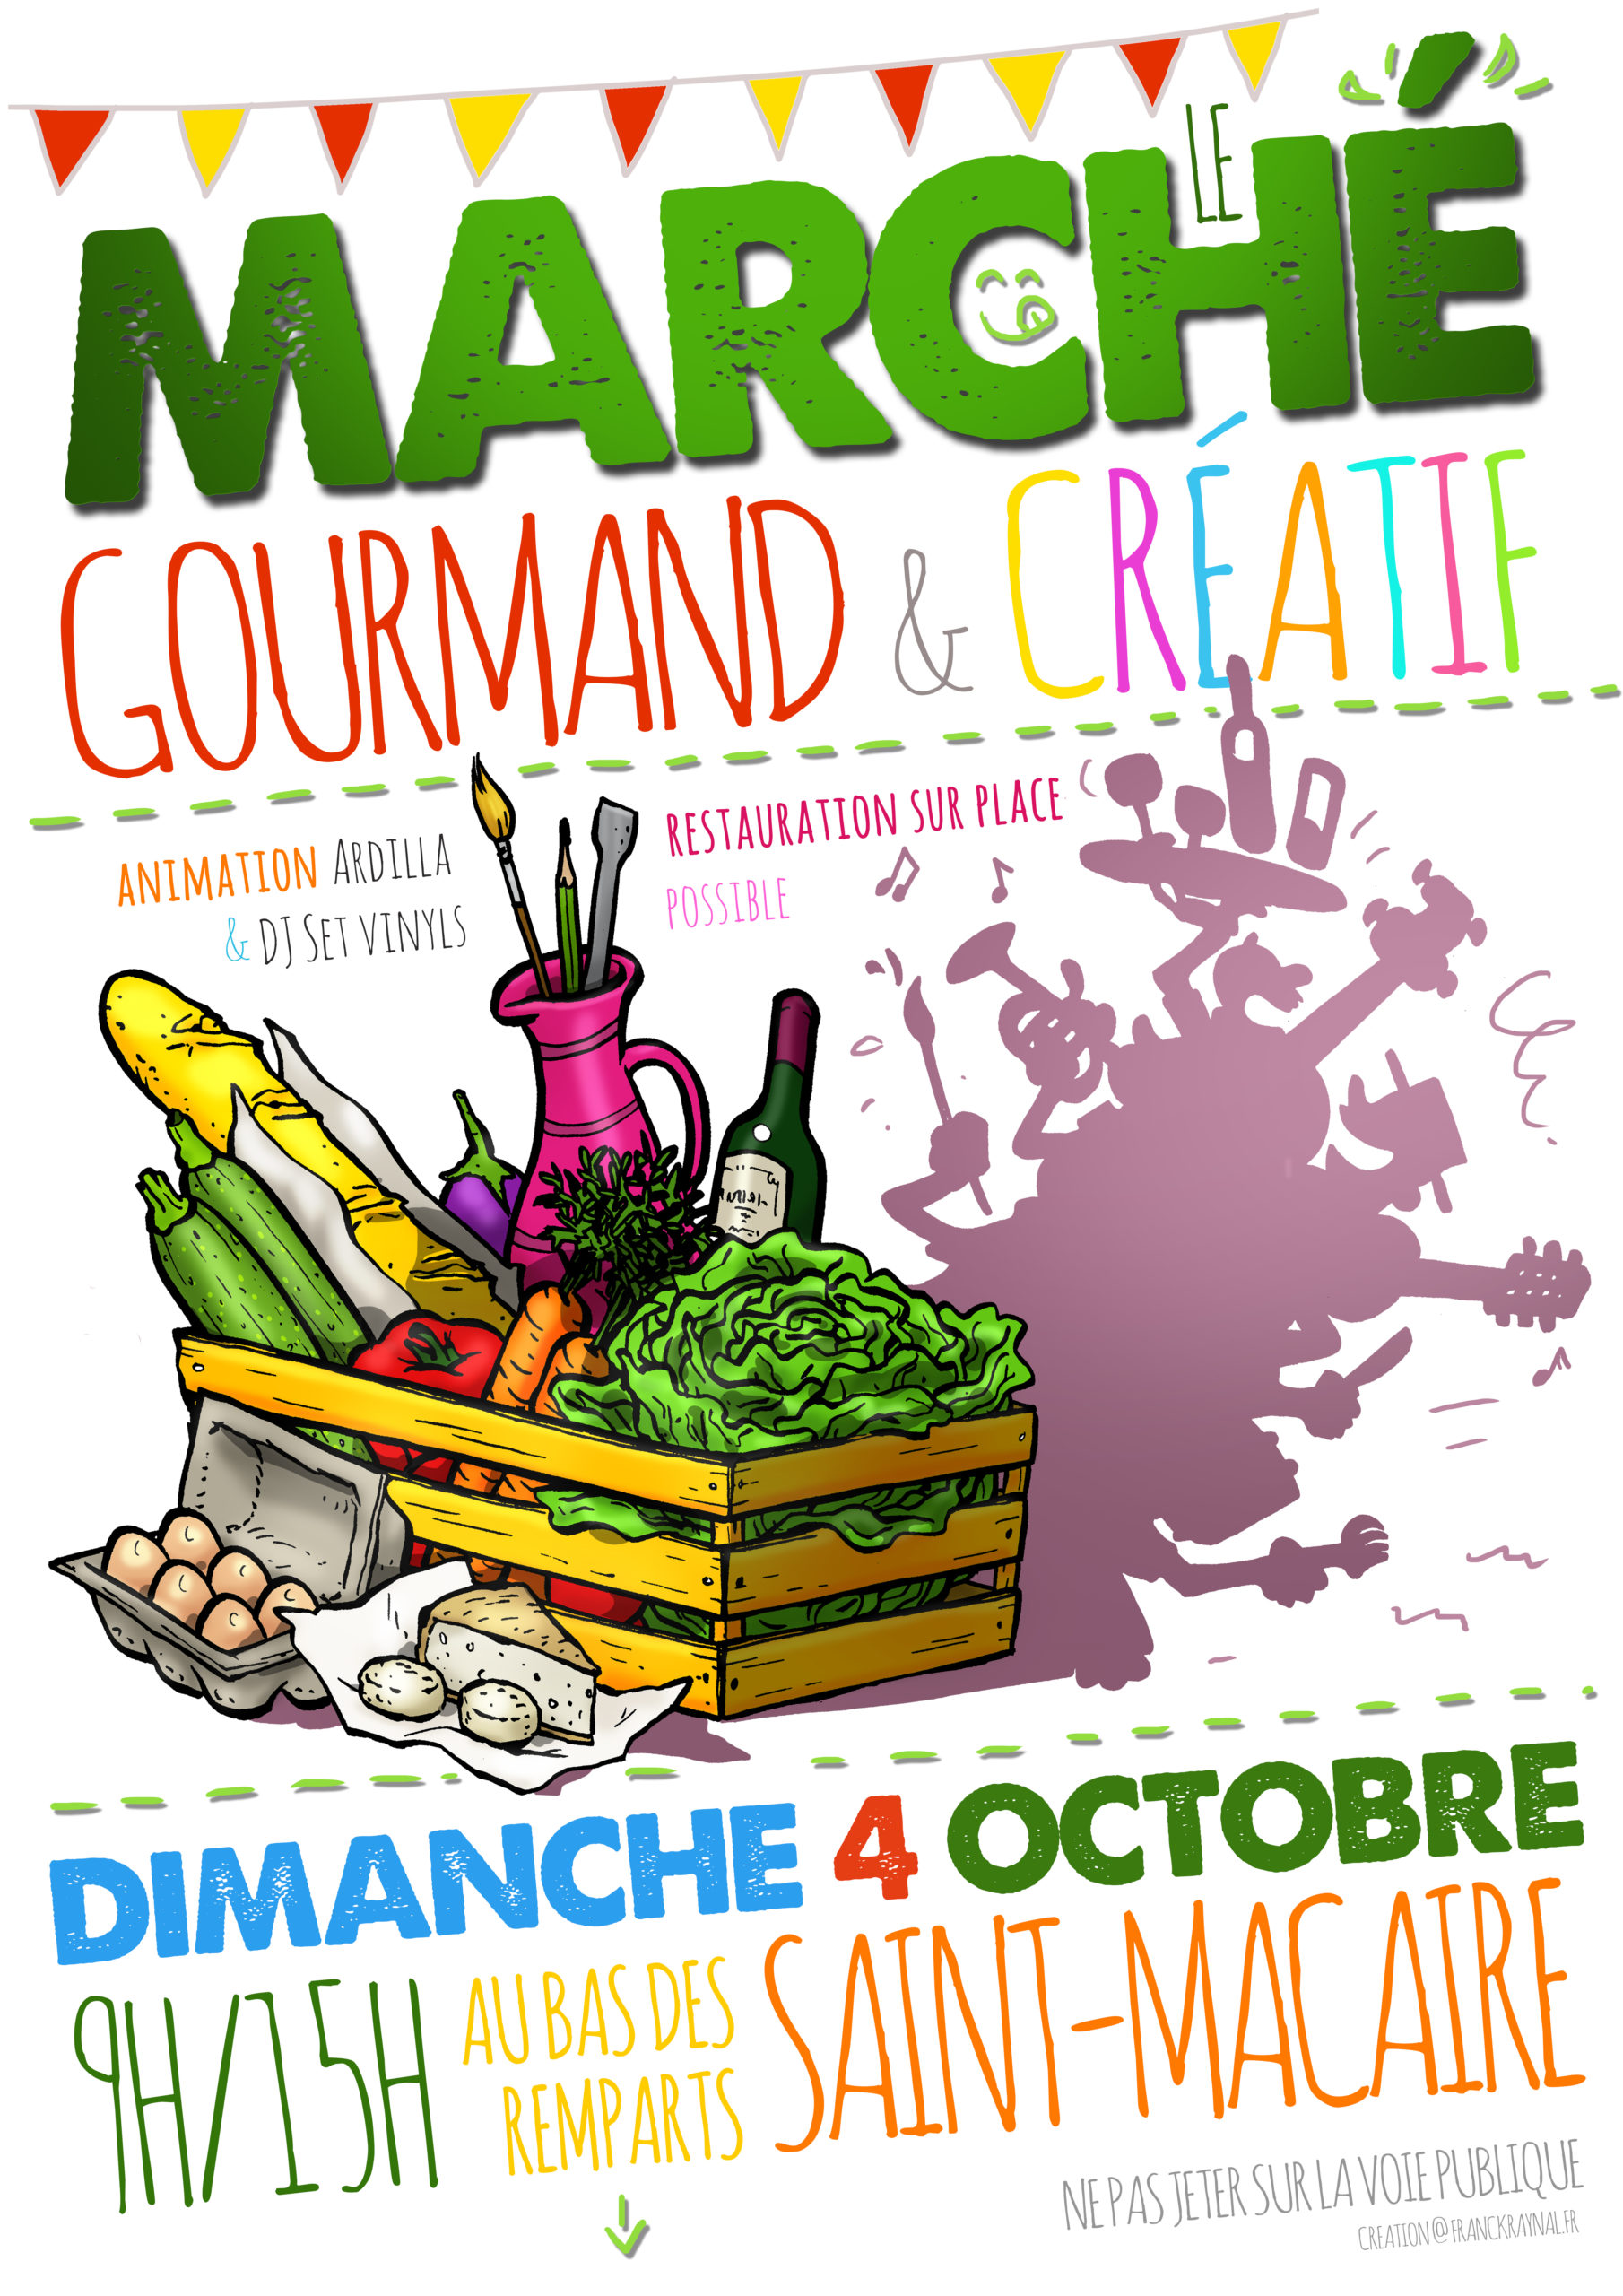 200907_saint-macaire_affiche-marche-gourmand-et-creatif_01_4960x7016